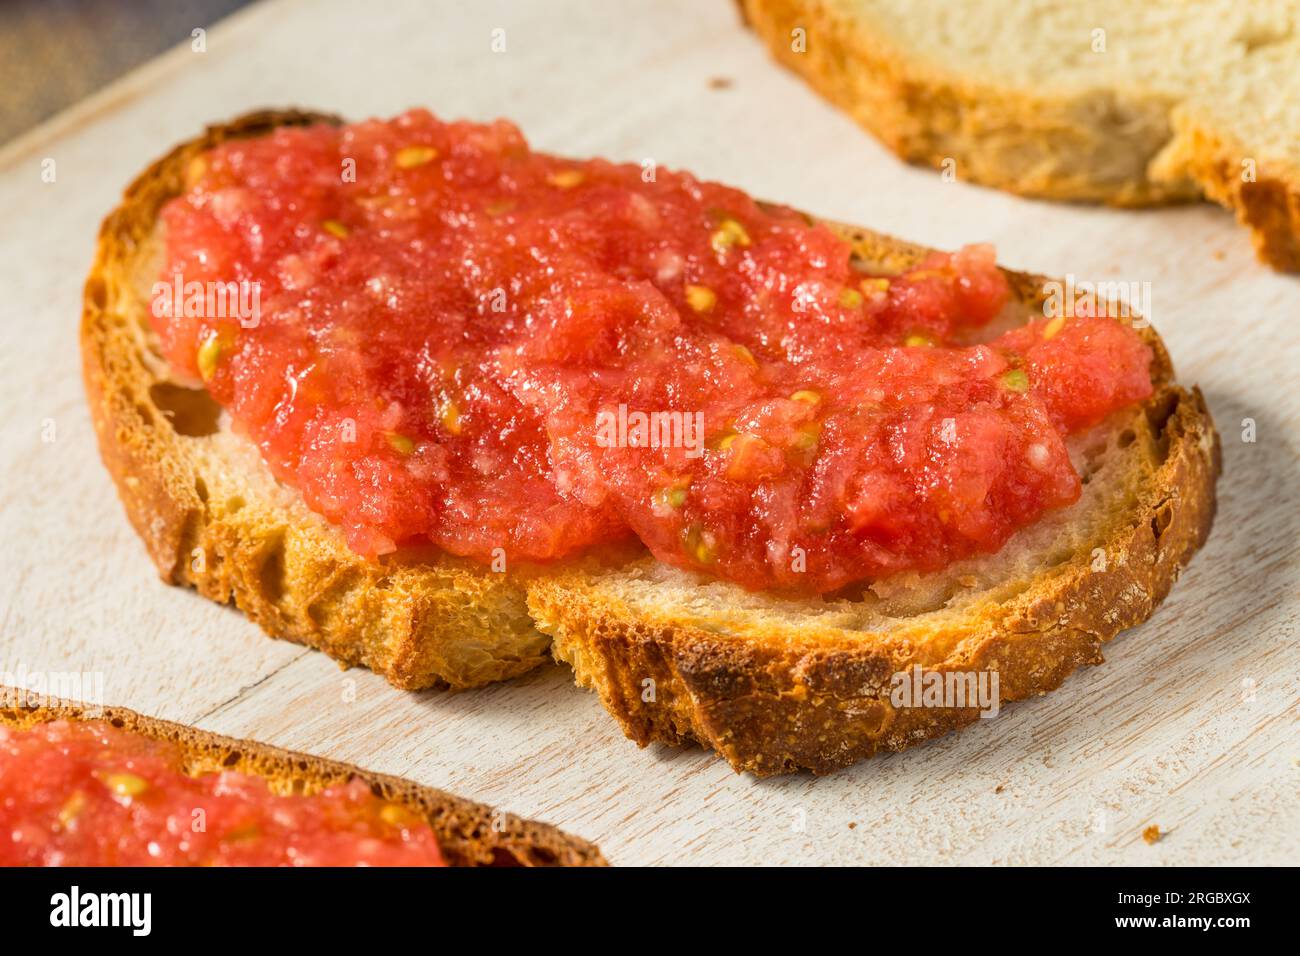 Pane tostato fatto in casa con pomodori e olio d'oliva Foto Stock